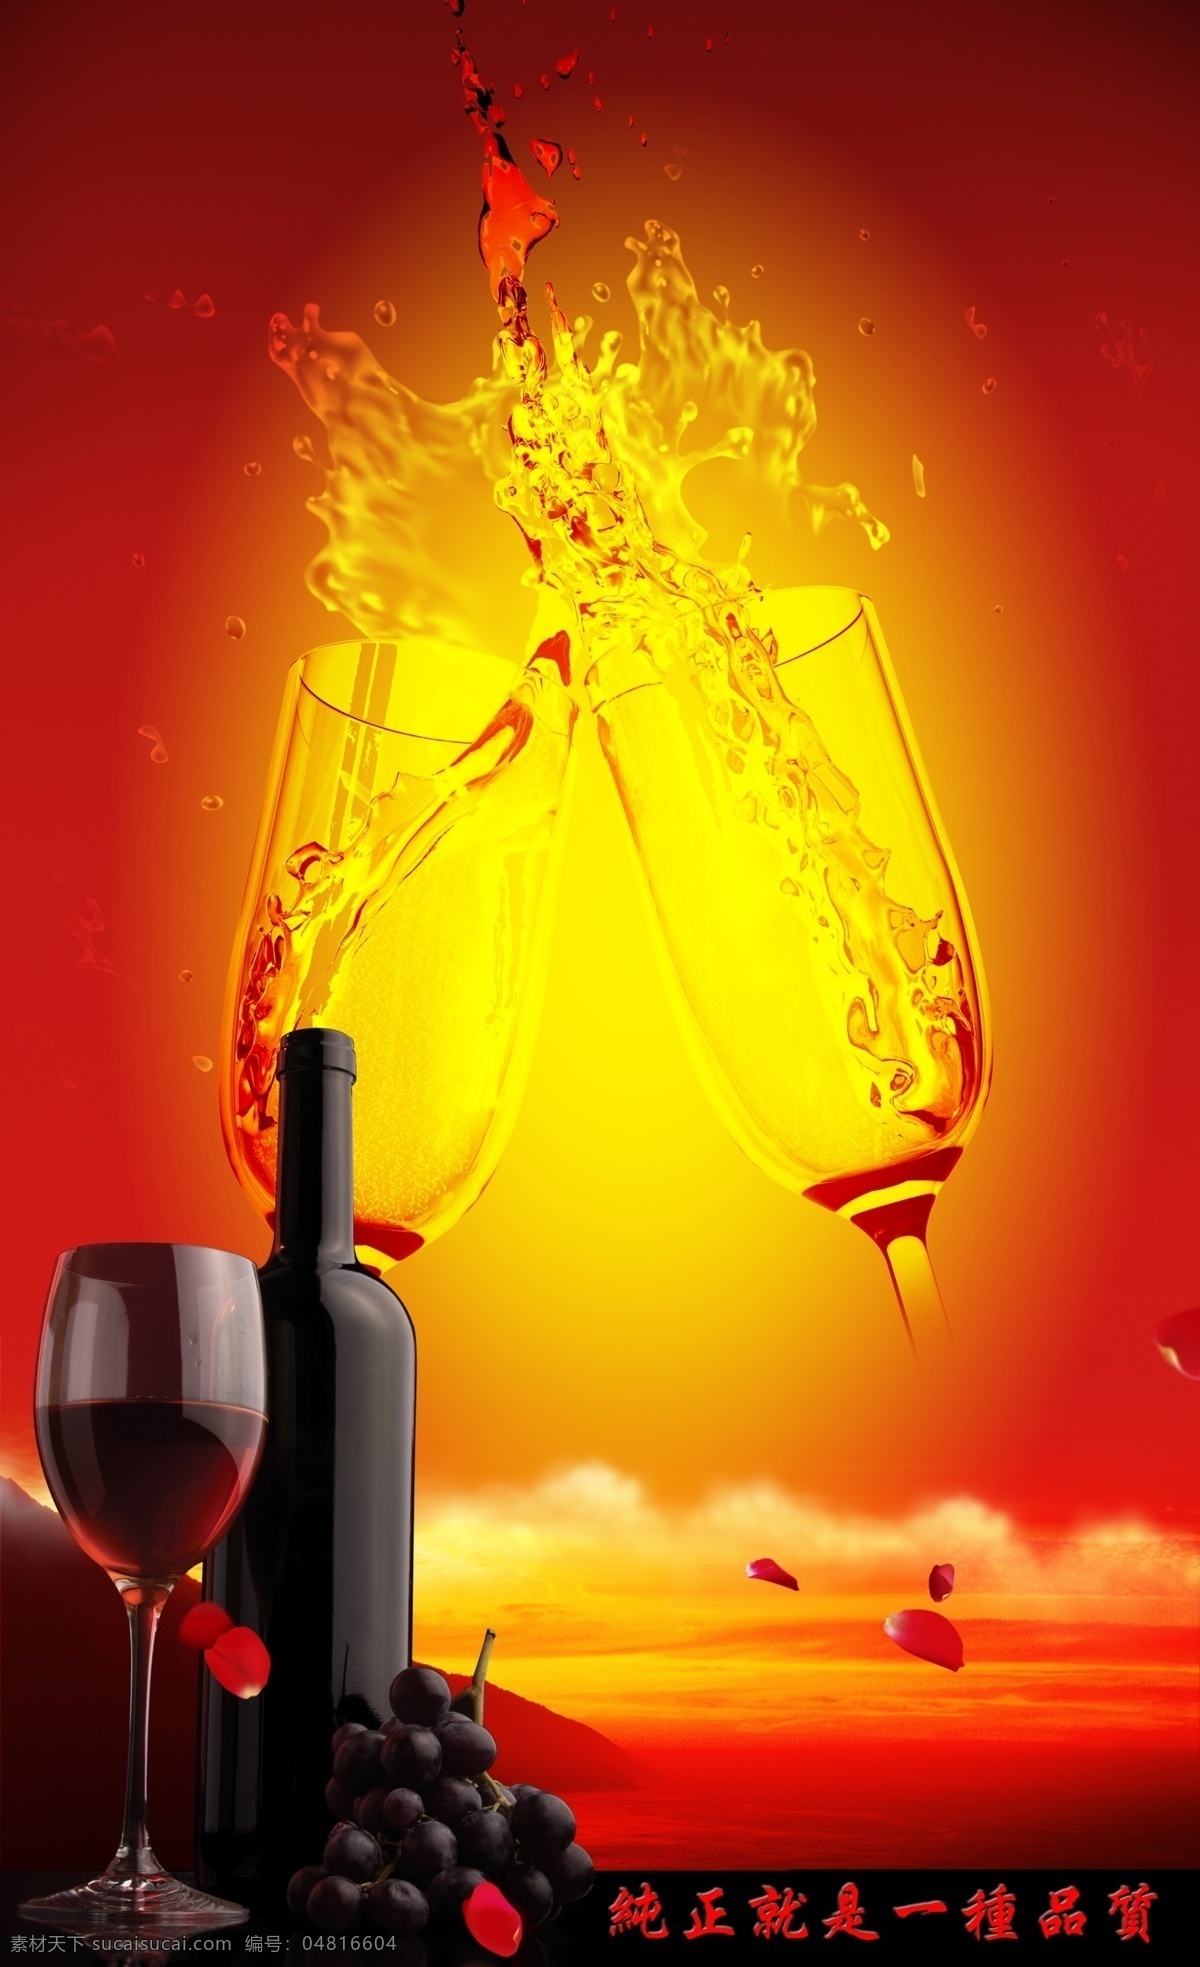 杯子 背景 产品海报 产品海报设计 广告设计模板 红葡萄酒 花瓣 模板下载 葡萄酒 葡萄 酒 水果 葡萄酒海报 水花 酒类 源文件 矢量图 日常生活